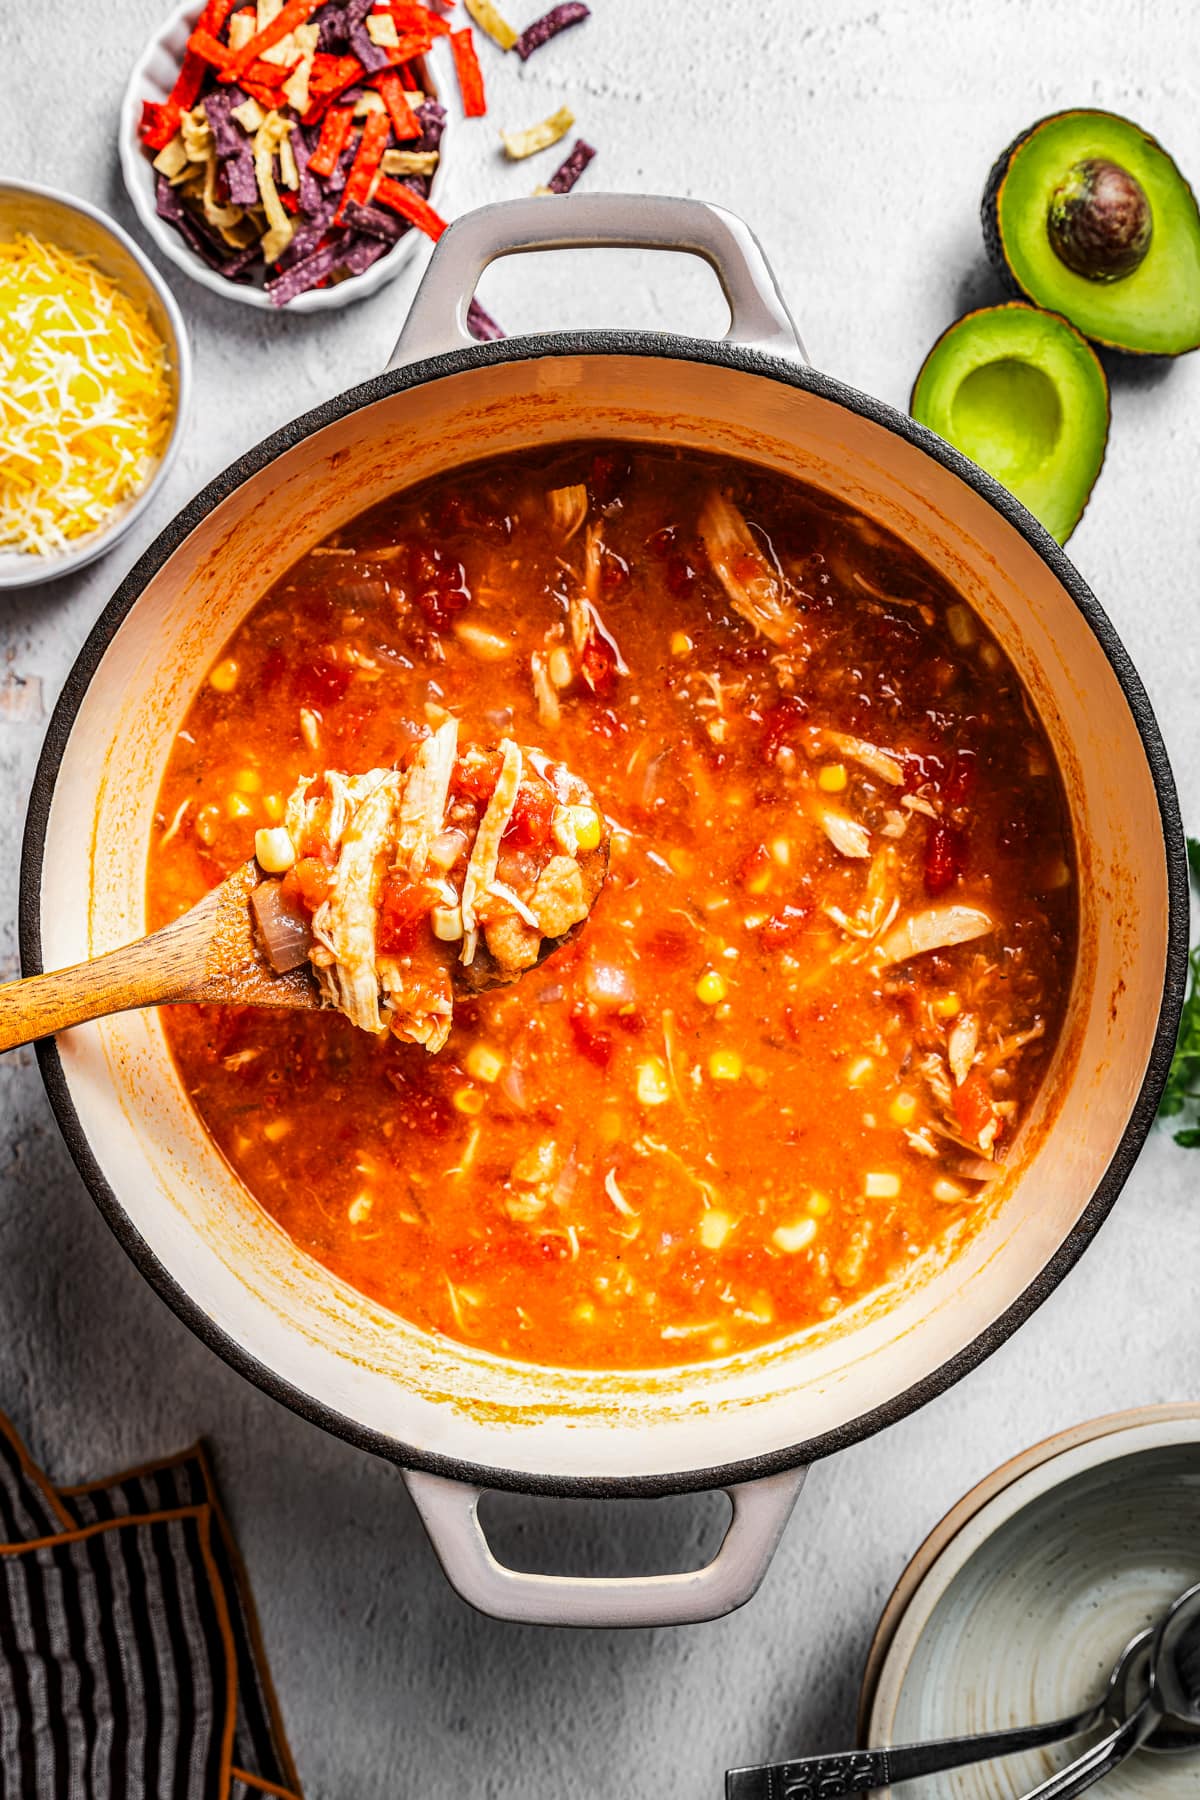 Chicken tortilla soup in a pot near tortilla strips, cheese, and avocado.